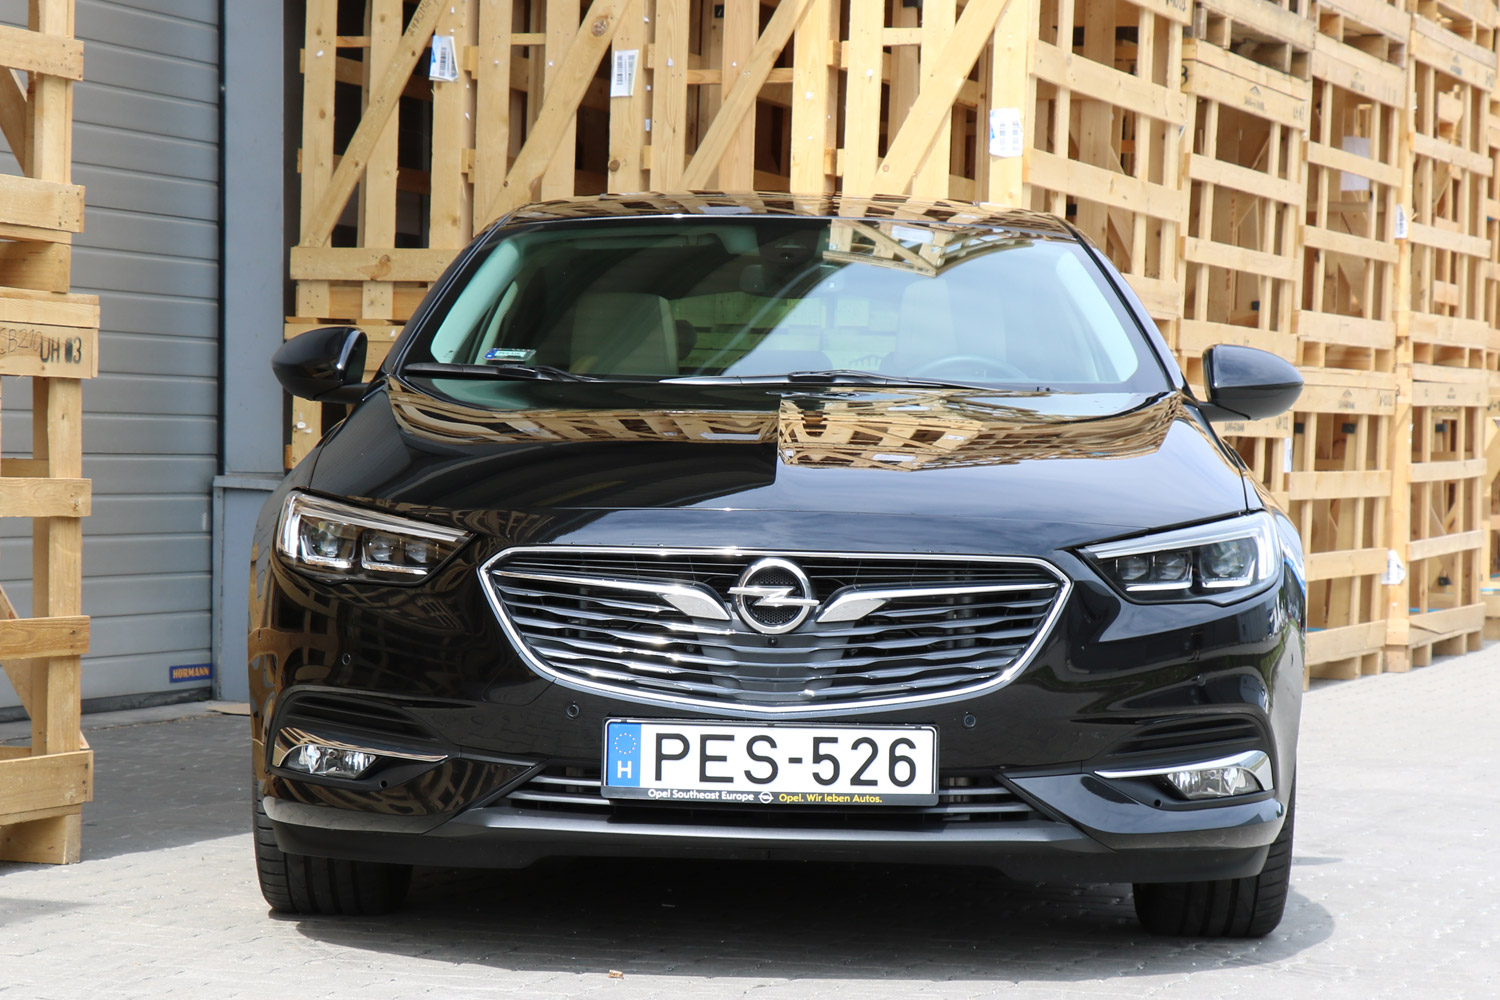 Itthon teszteltük, mit ér az Opel csúcsmodellje 4